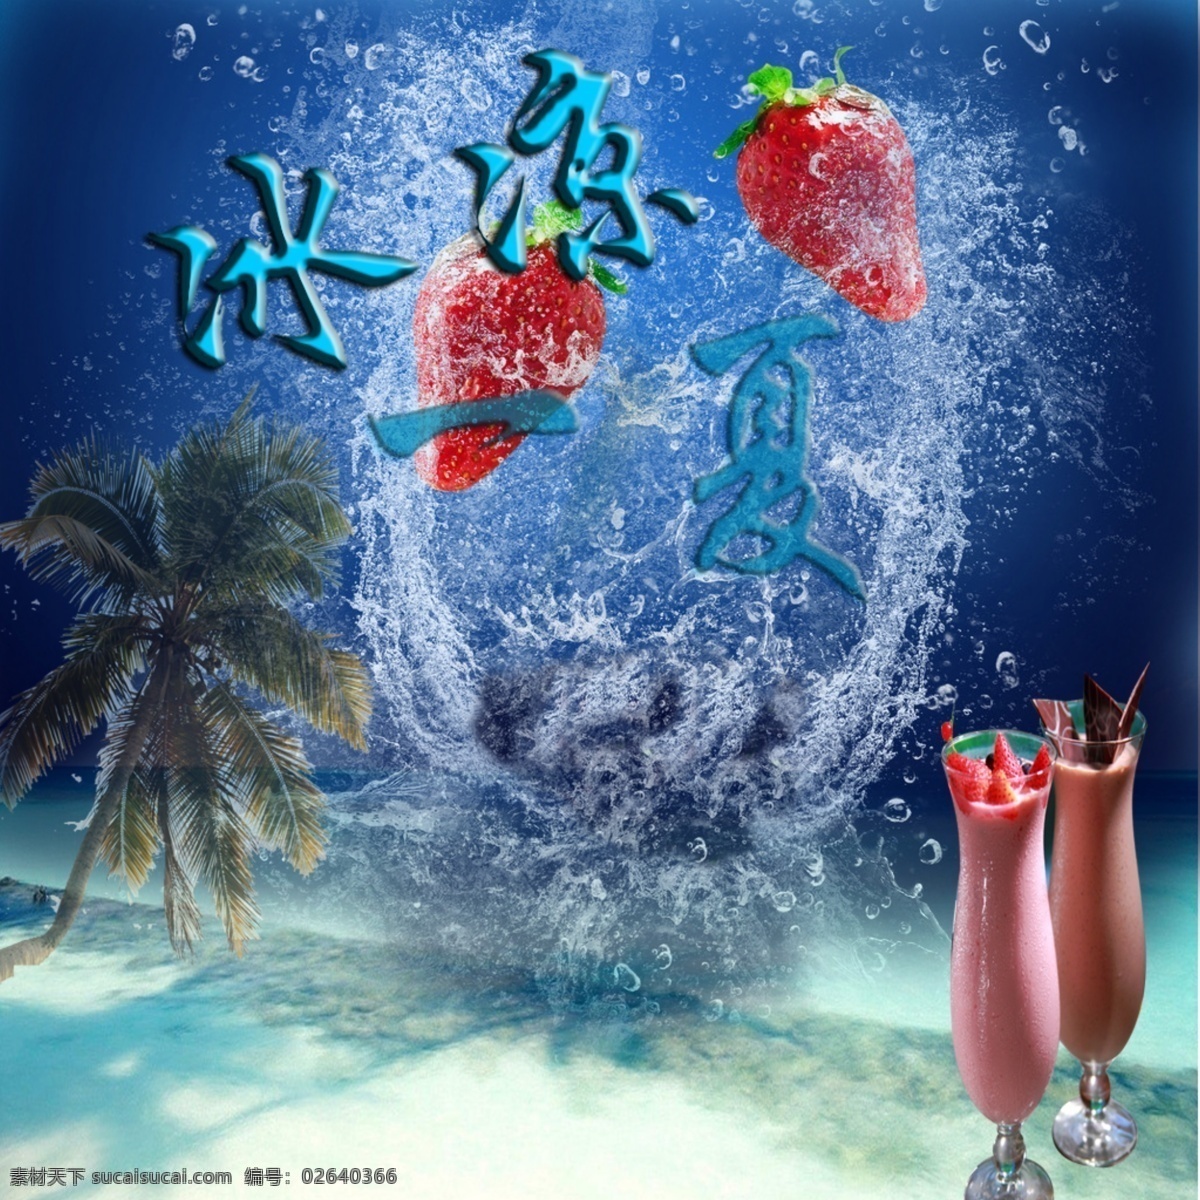 冰凉 一夏 冰凉一夏 草莓 广告设计模板 海滩 奶昔 其他模版 椰树 源文件 psd源文件